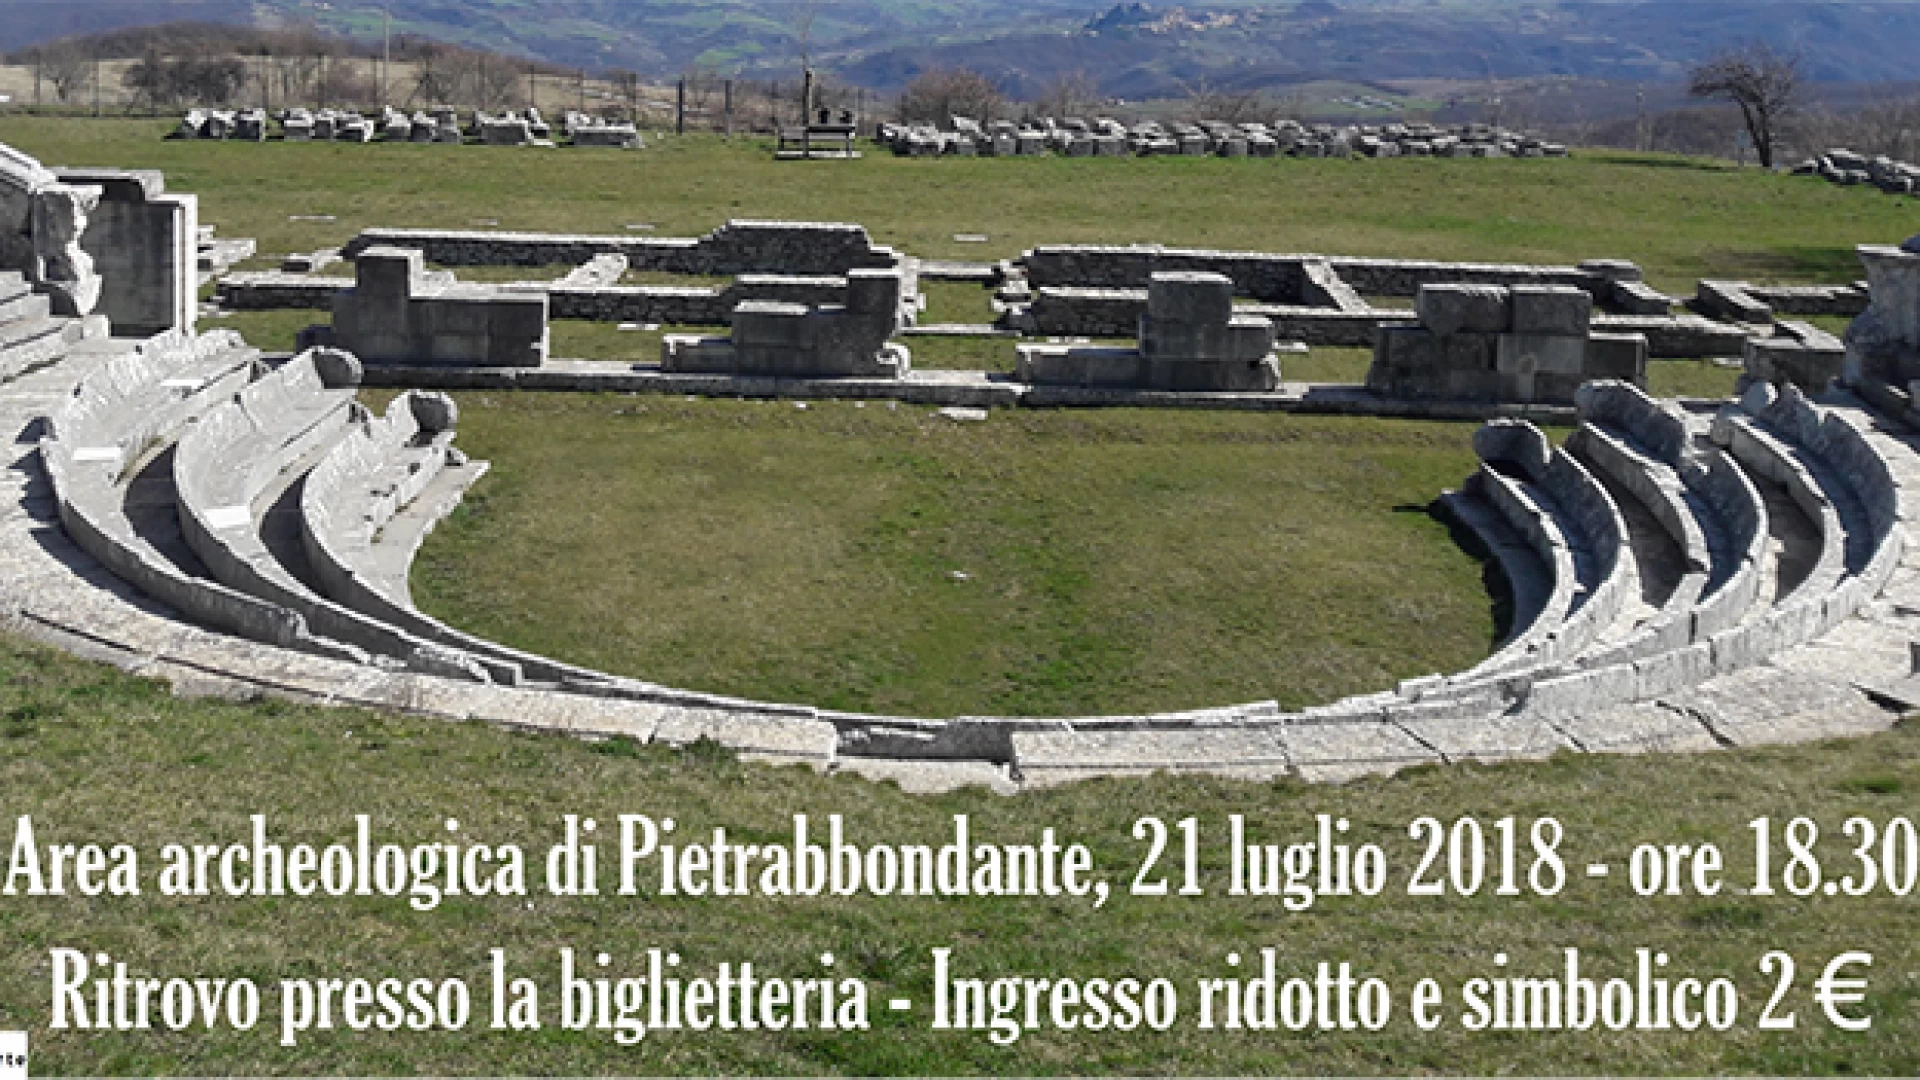 Pietrabbondante: “Visita all’Imbrunire”, l’area archeologica si apre di sera ai turisti.